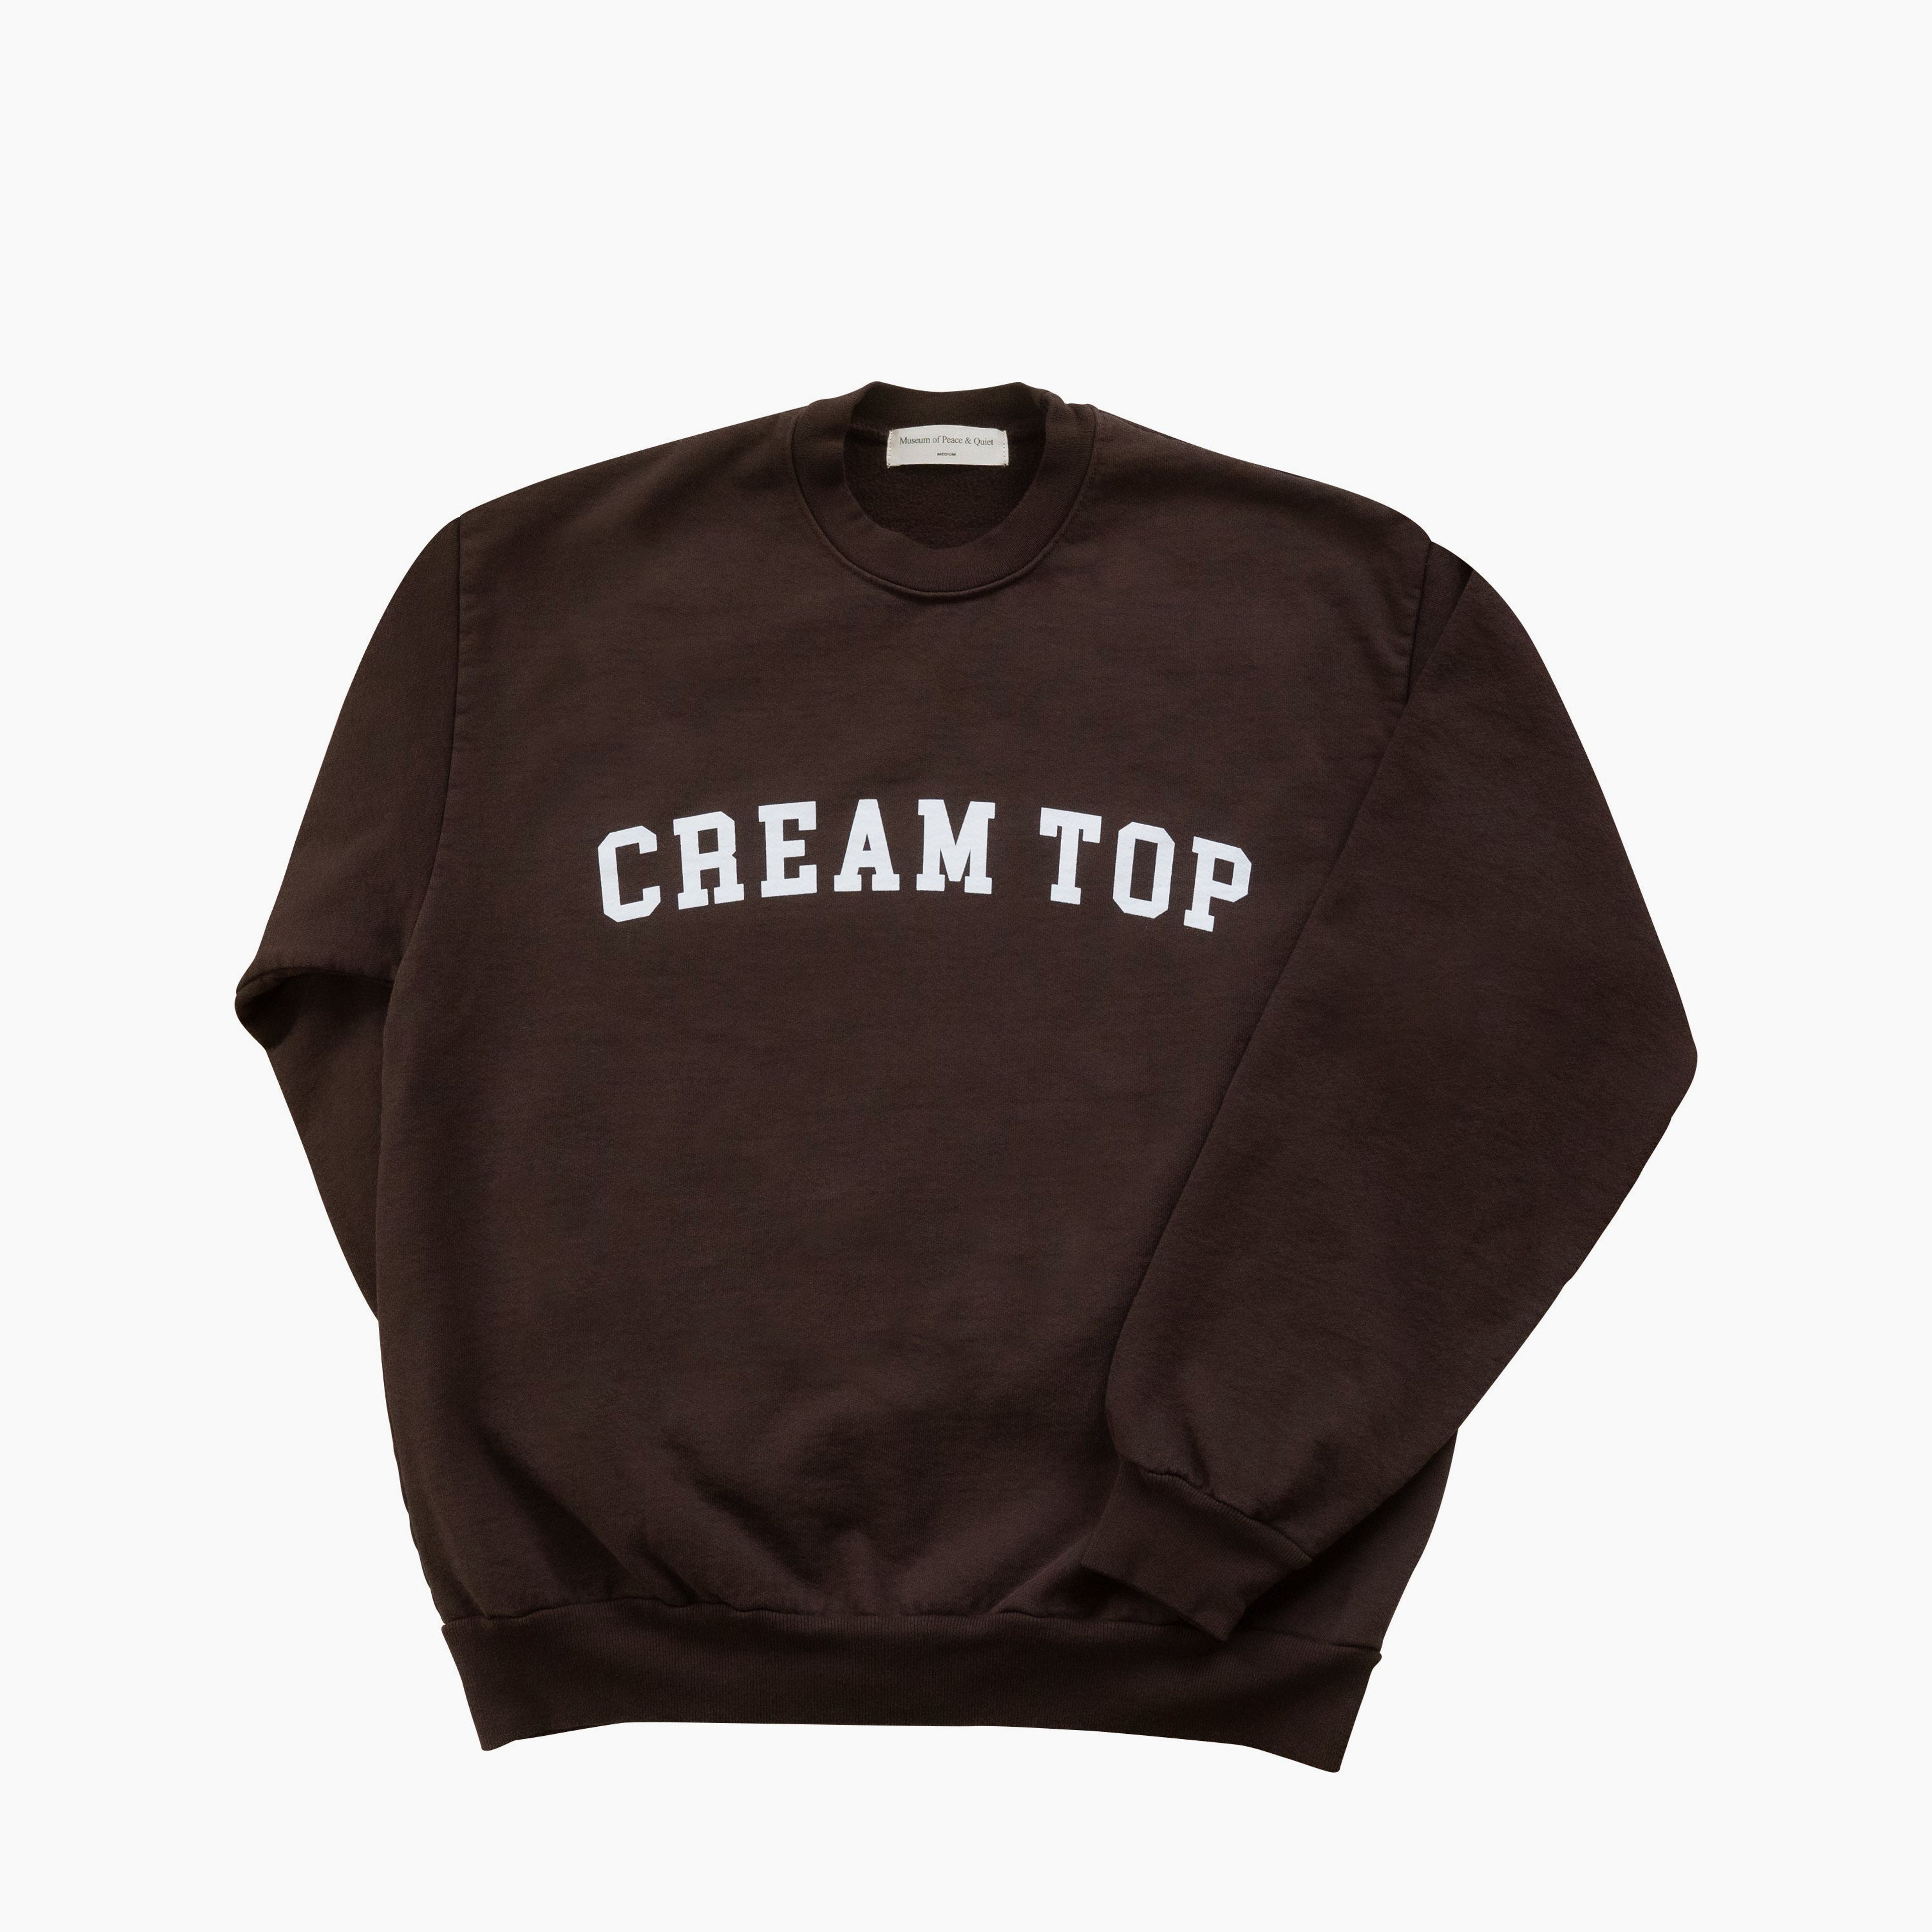 MoPQ X Creamtop Sweatshirt